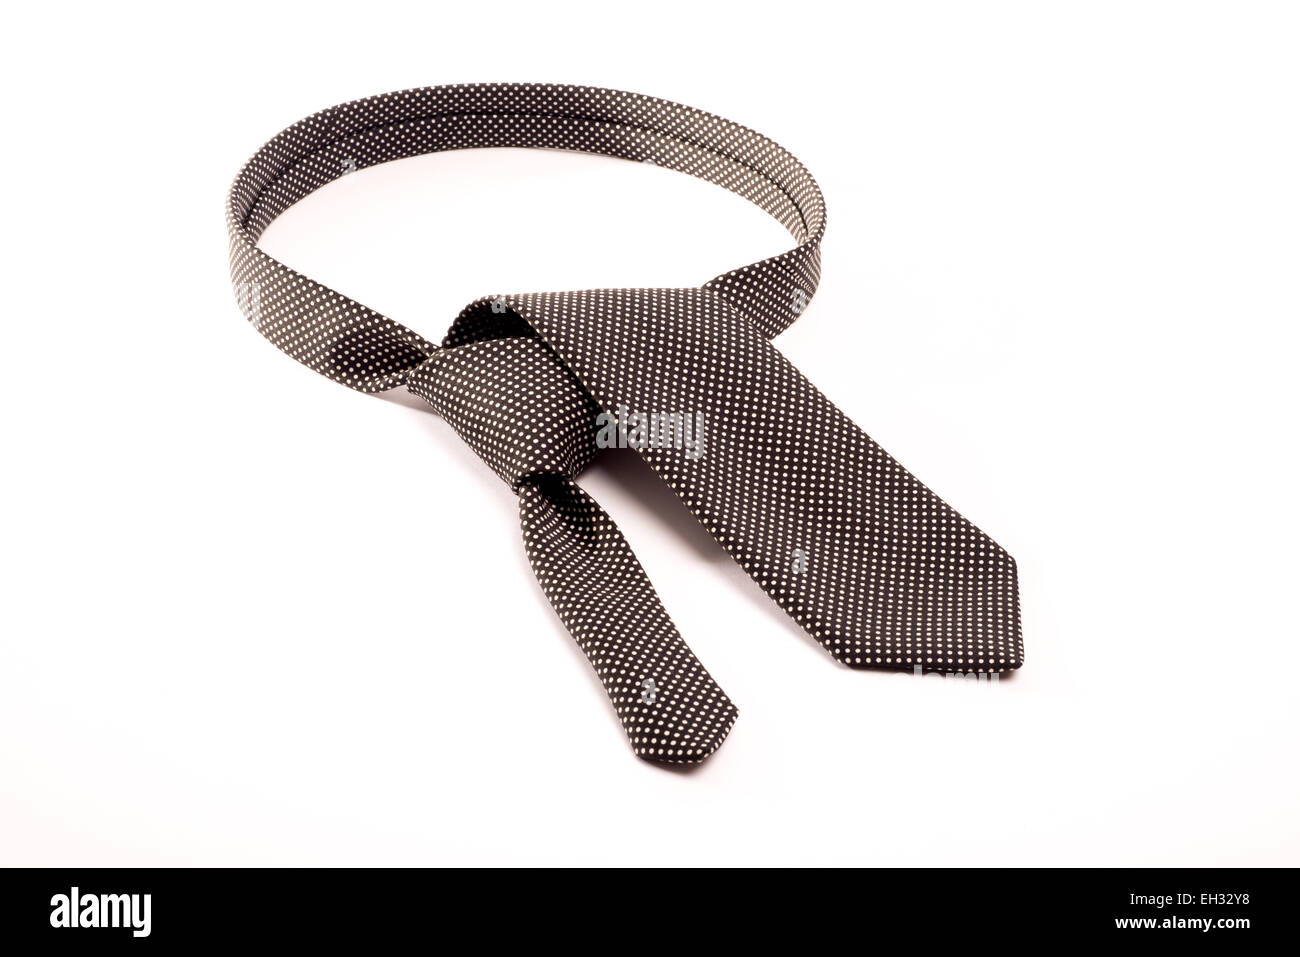 Una cravatta nera con puntini bianchi su sfondo bianco ripiegato come se per fare un nodo di cravatta attorno al collo. Foto Stock